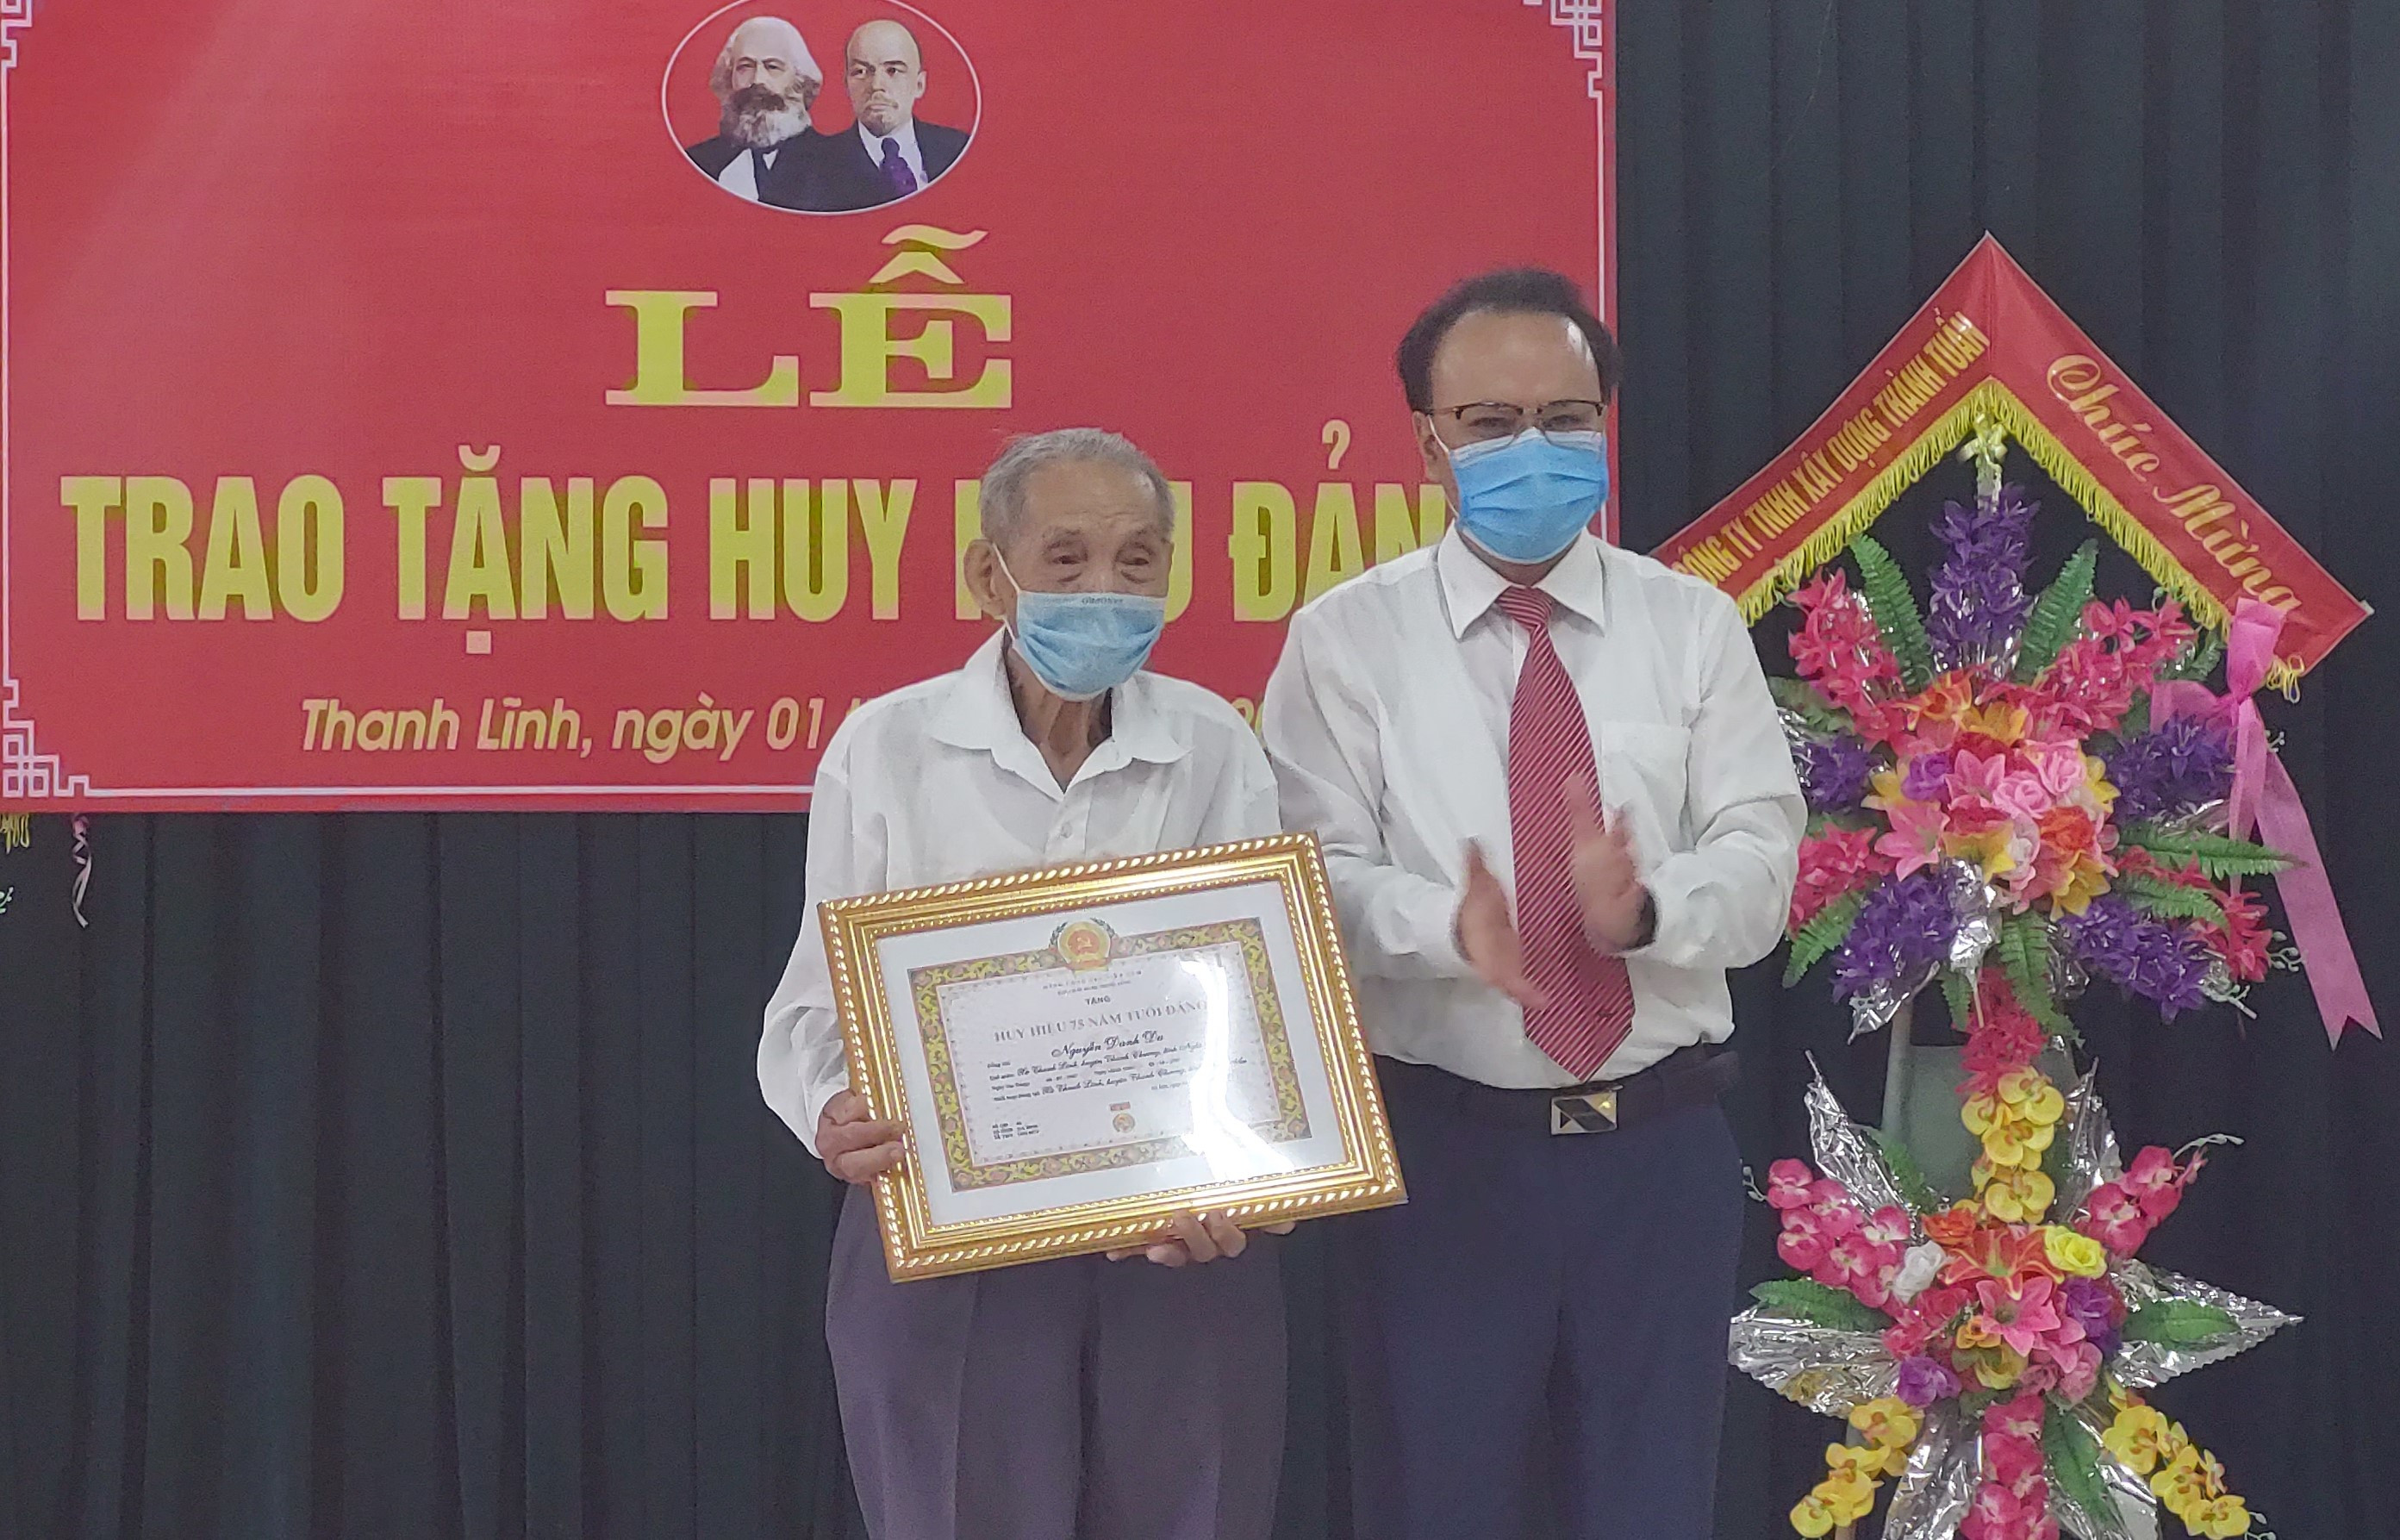 Đồng chí Nguyễn Nam Đình - Phó Chủ tịch Thường trực HĐND tỉnh về dự và trao huy hiệu cho đảng viênNguyễn Danh Du, sinh năm 1927 thuộc Đảng bộ xã Thanh Lĩnh.